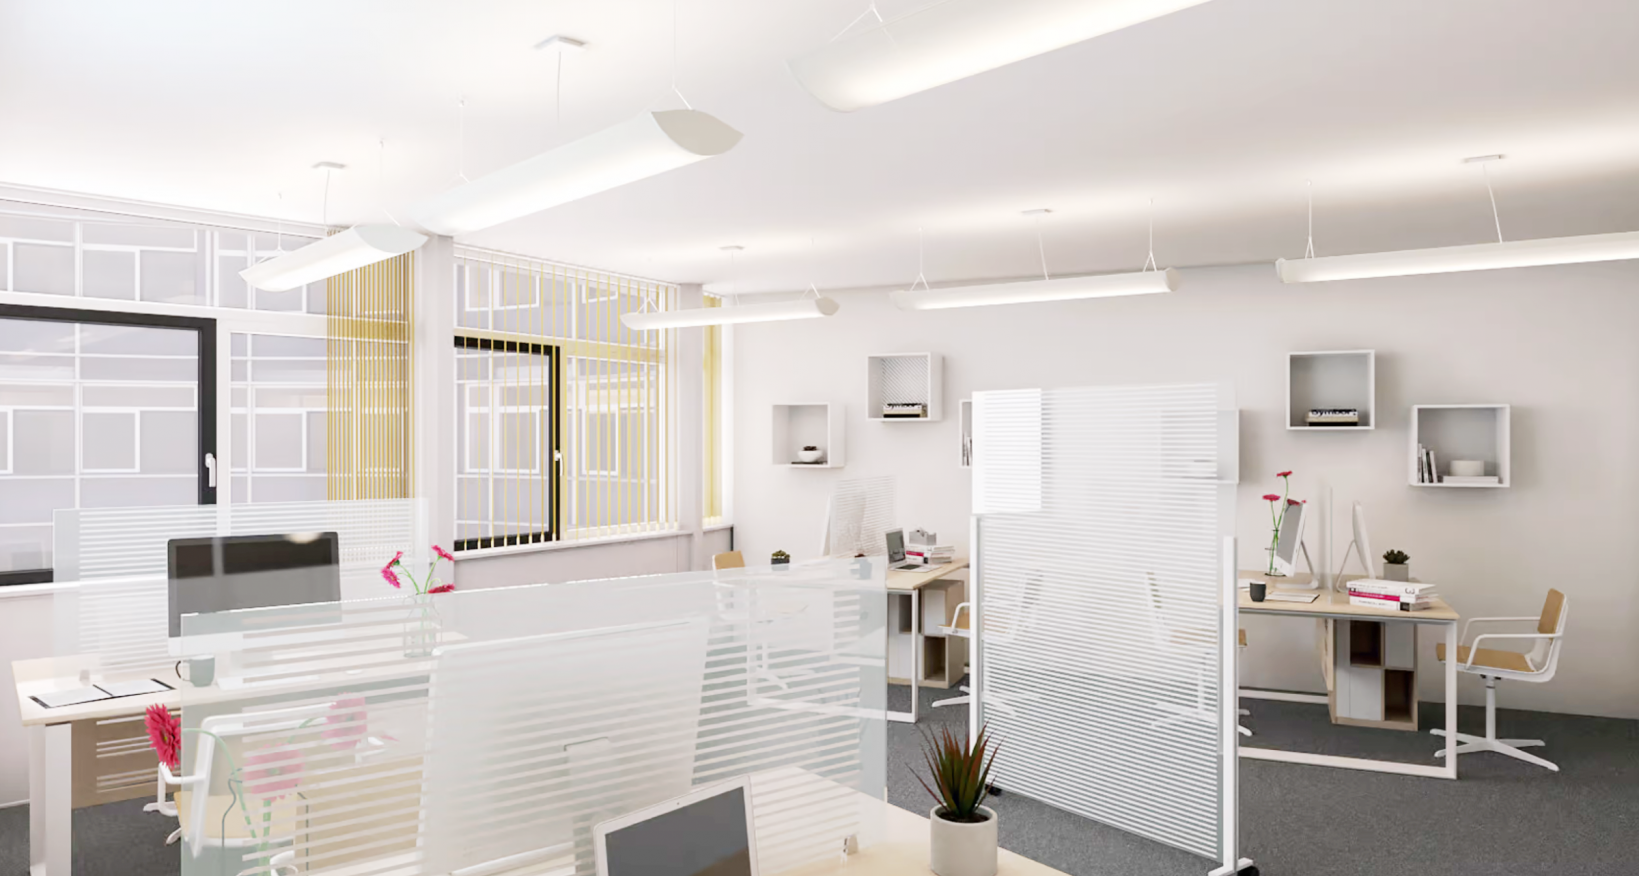 Per sofort oder nach Vereinbarung vermieten wir attraktive  Büroräume mit einer Fläche von 158 m2 für ca. 20 Arbeitsplätze  in der Altstadt von Aarau.